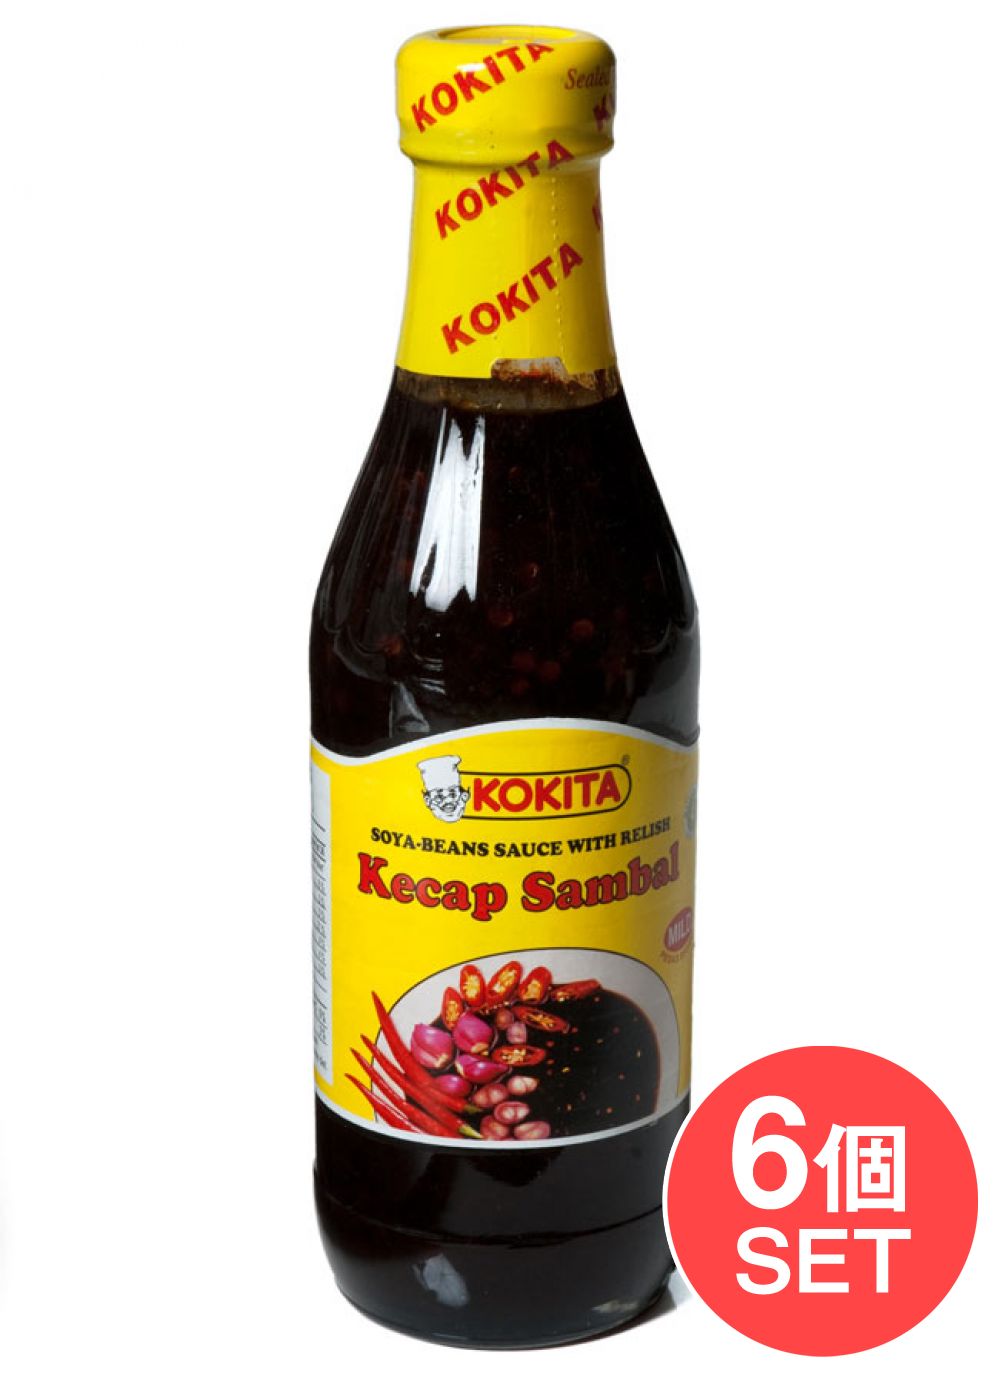 【6個セット】ケチャップ サンバル マイルド Kecap Sambal Mild シーズニング醤油 【Kokita】 / インドネシア料理 バリ ソース ナシゴレ